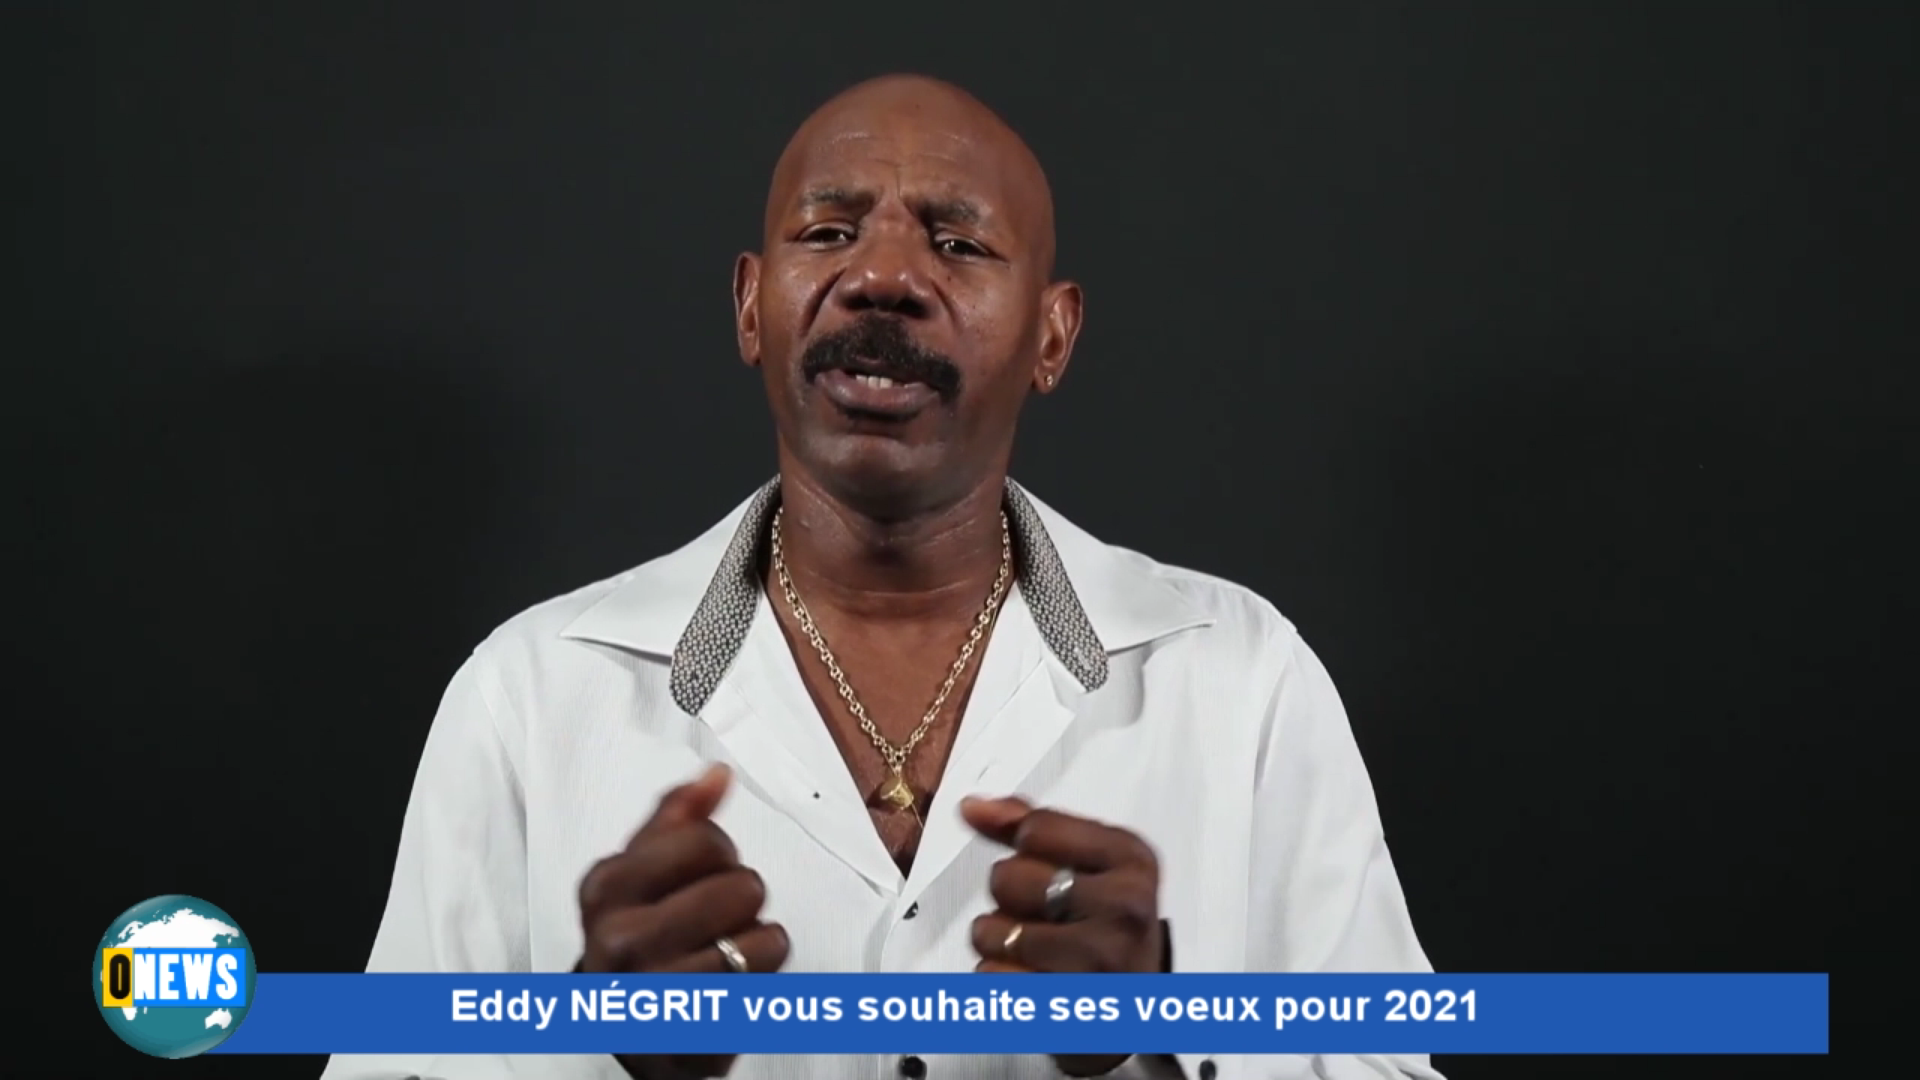 [Vidéo] Onews Spécial Voeux. Eddy NÉGRIT vous présente ses voeux pour 2021